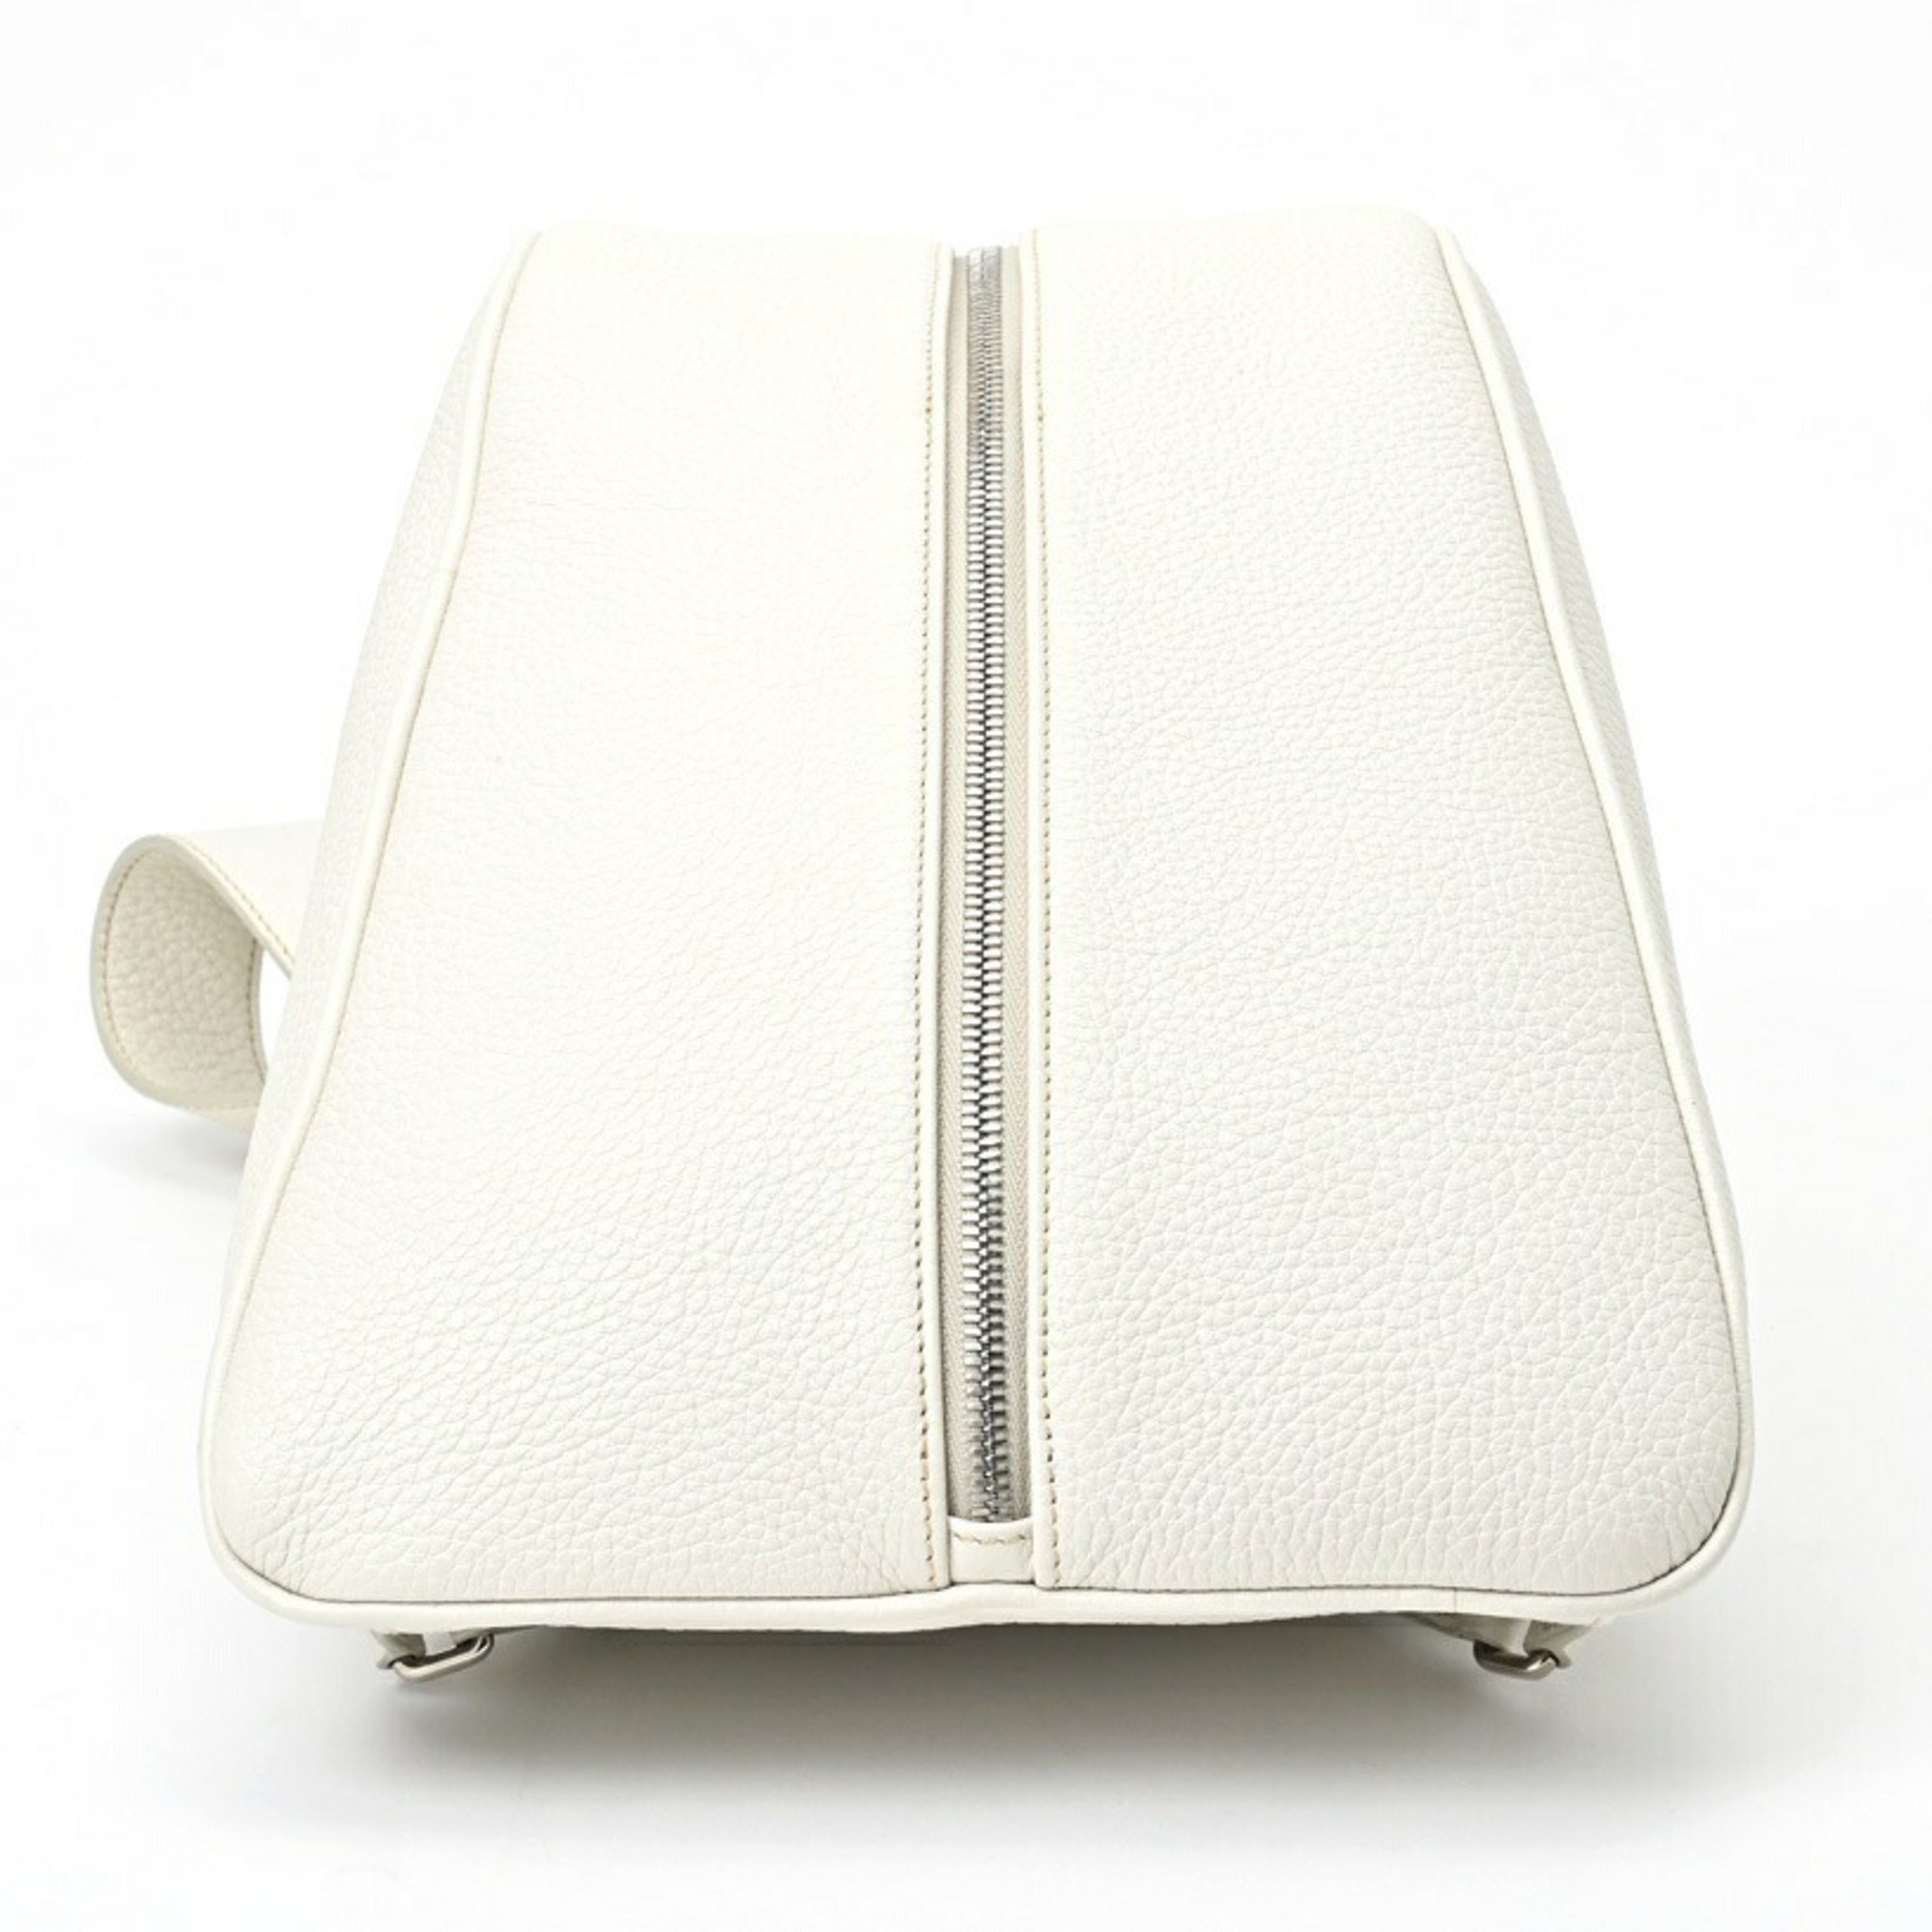 PRADA Vitello Triangle Backpack 2VZ099 Leather White S-155750